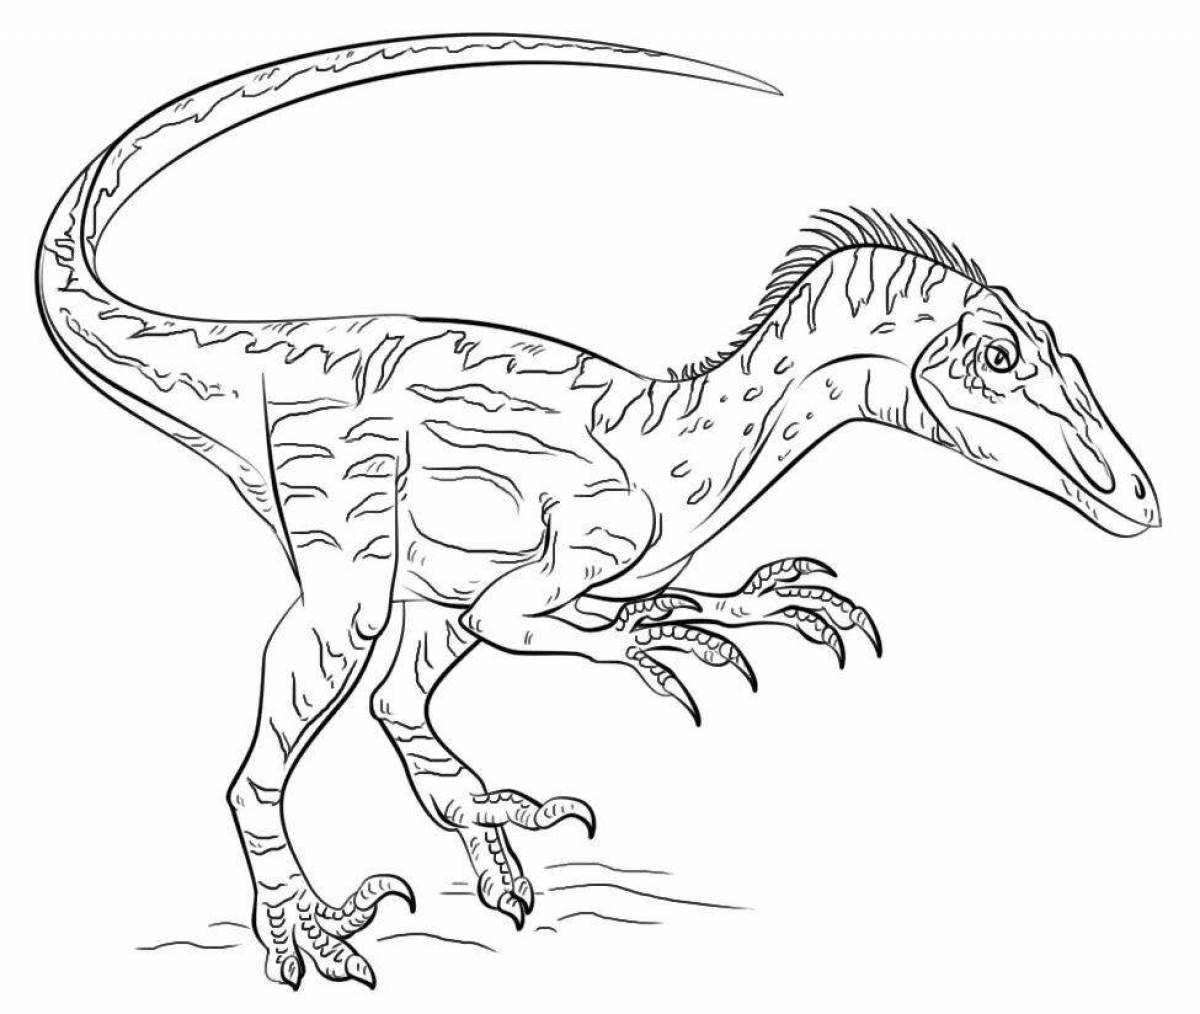 Powerful coloring predator dinosaur